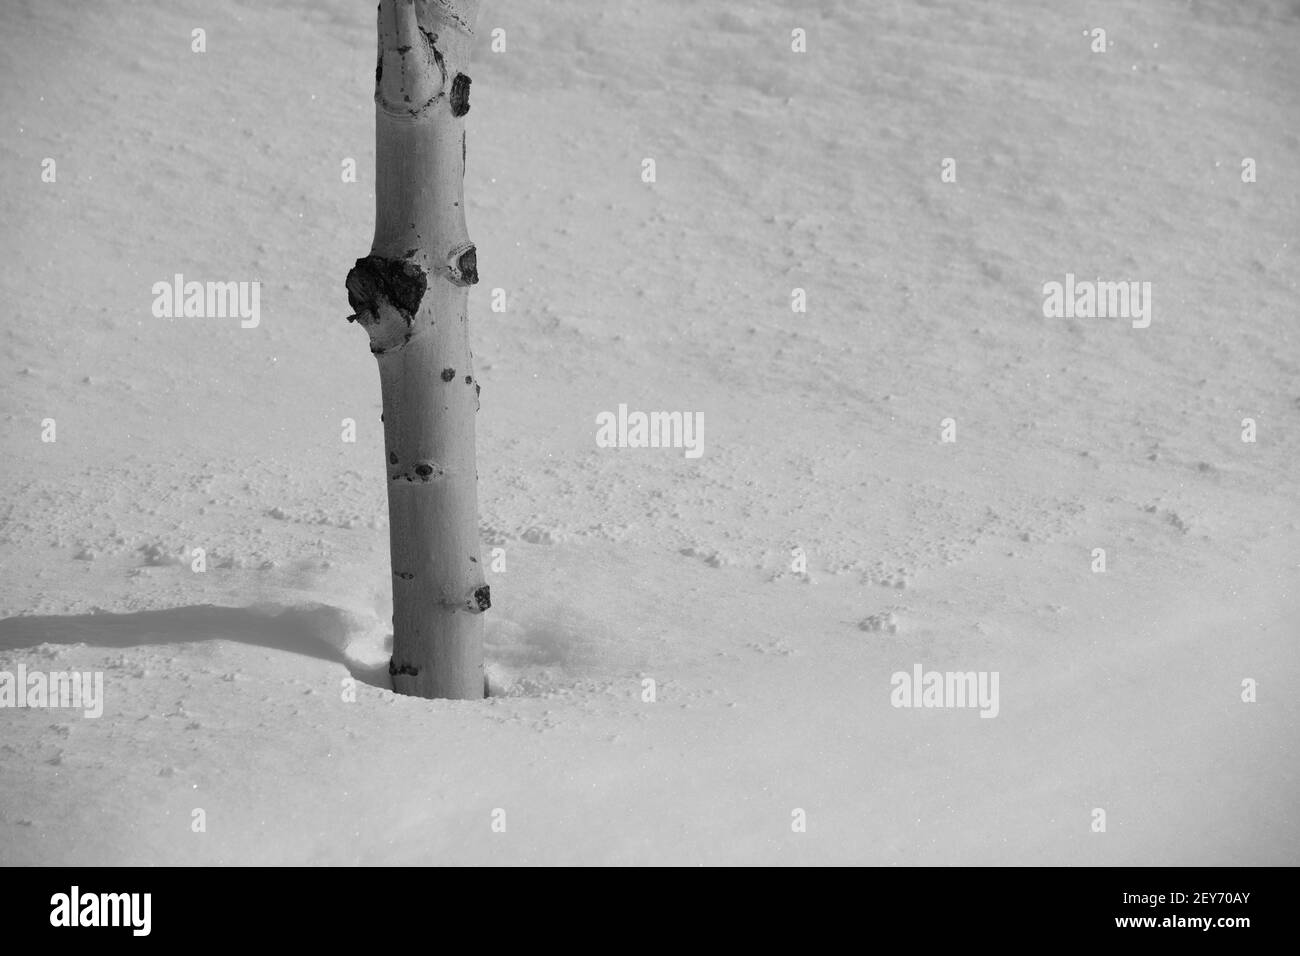 Nahaufnahme des Stammes der Birke in tiefem Schnee im Winter Wetter kaltes Klima Neuschnee fallen leeren Raum für Typ horizontalen Winter-Format Hintergrund Stockfoto